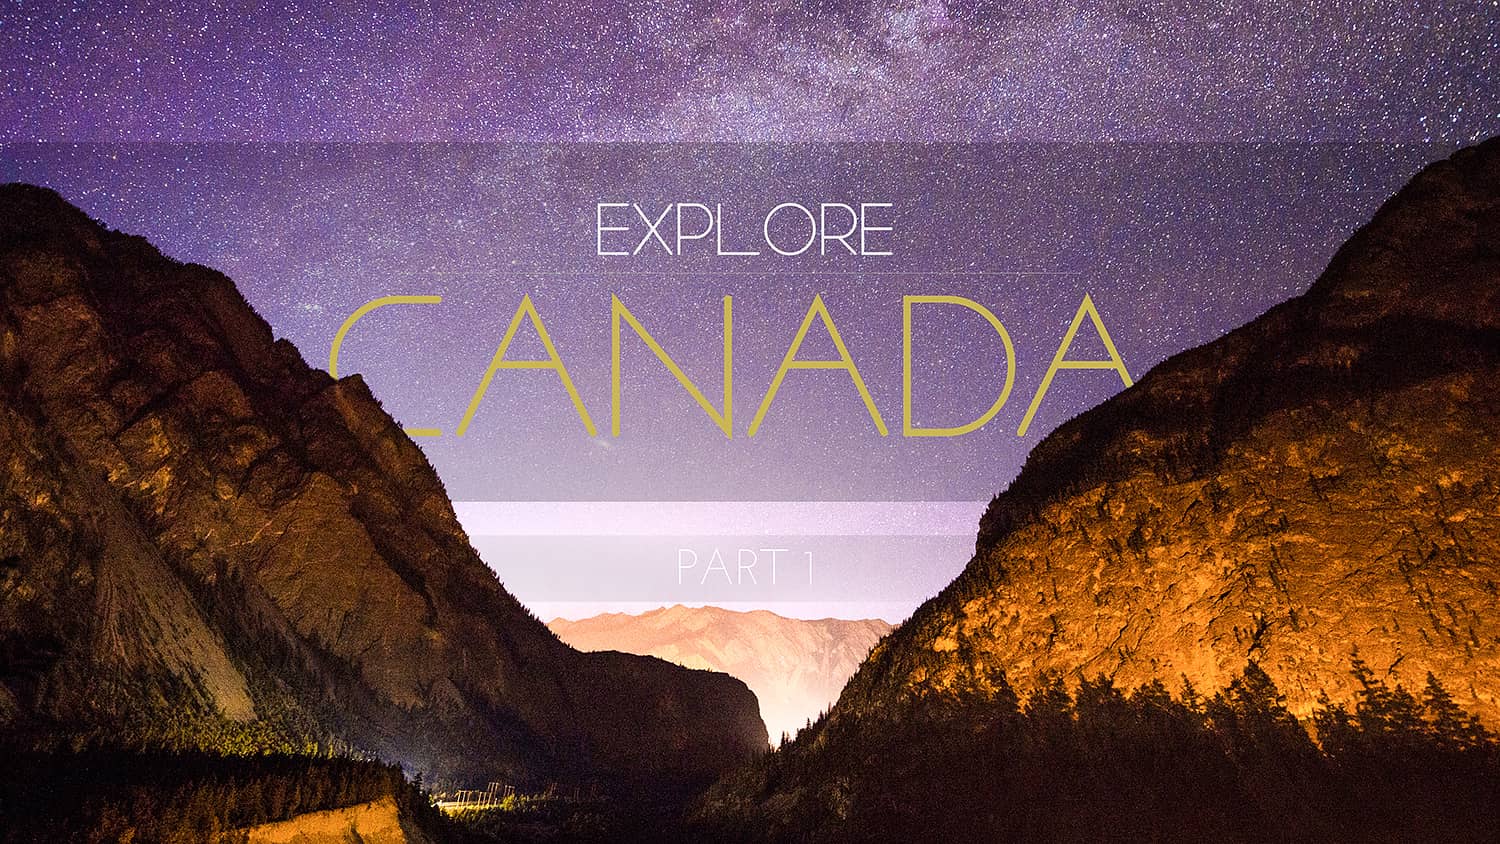 Explore Canada Part 1